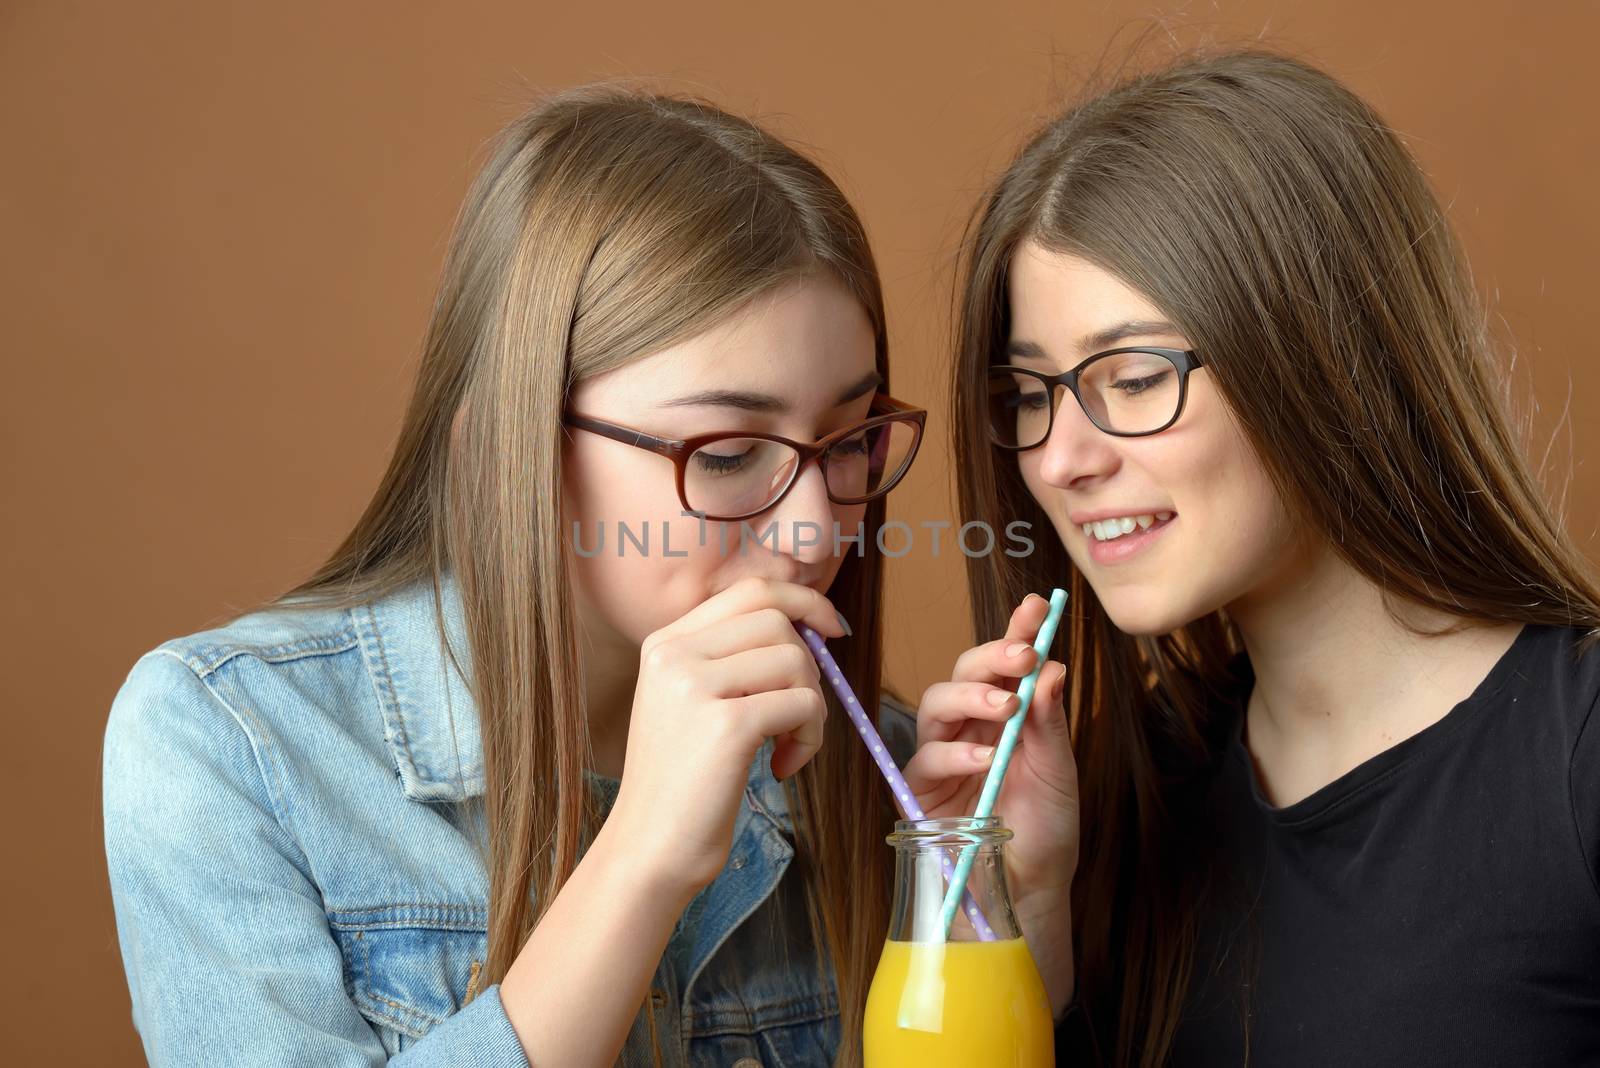 Girls sharing an orange juice drink 